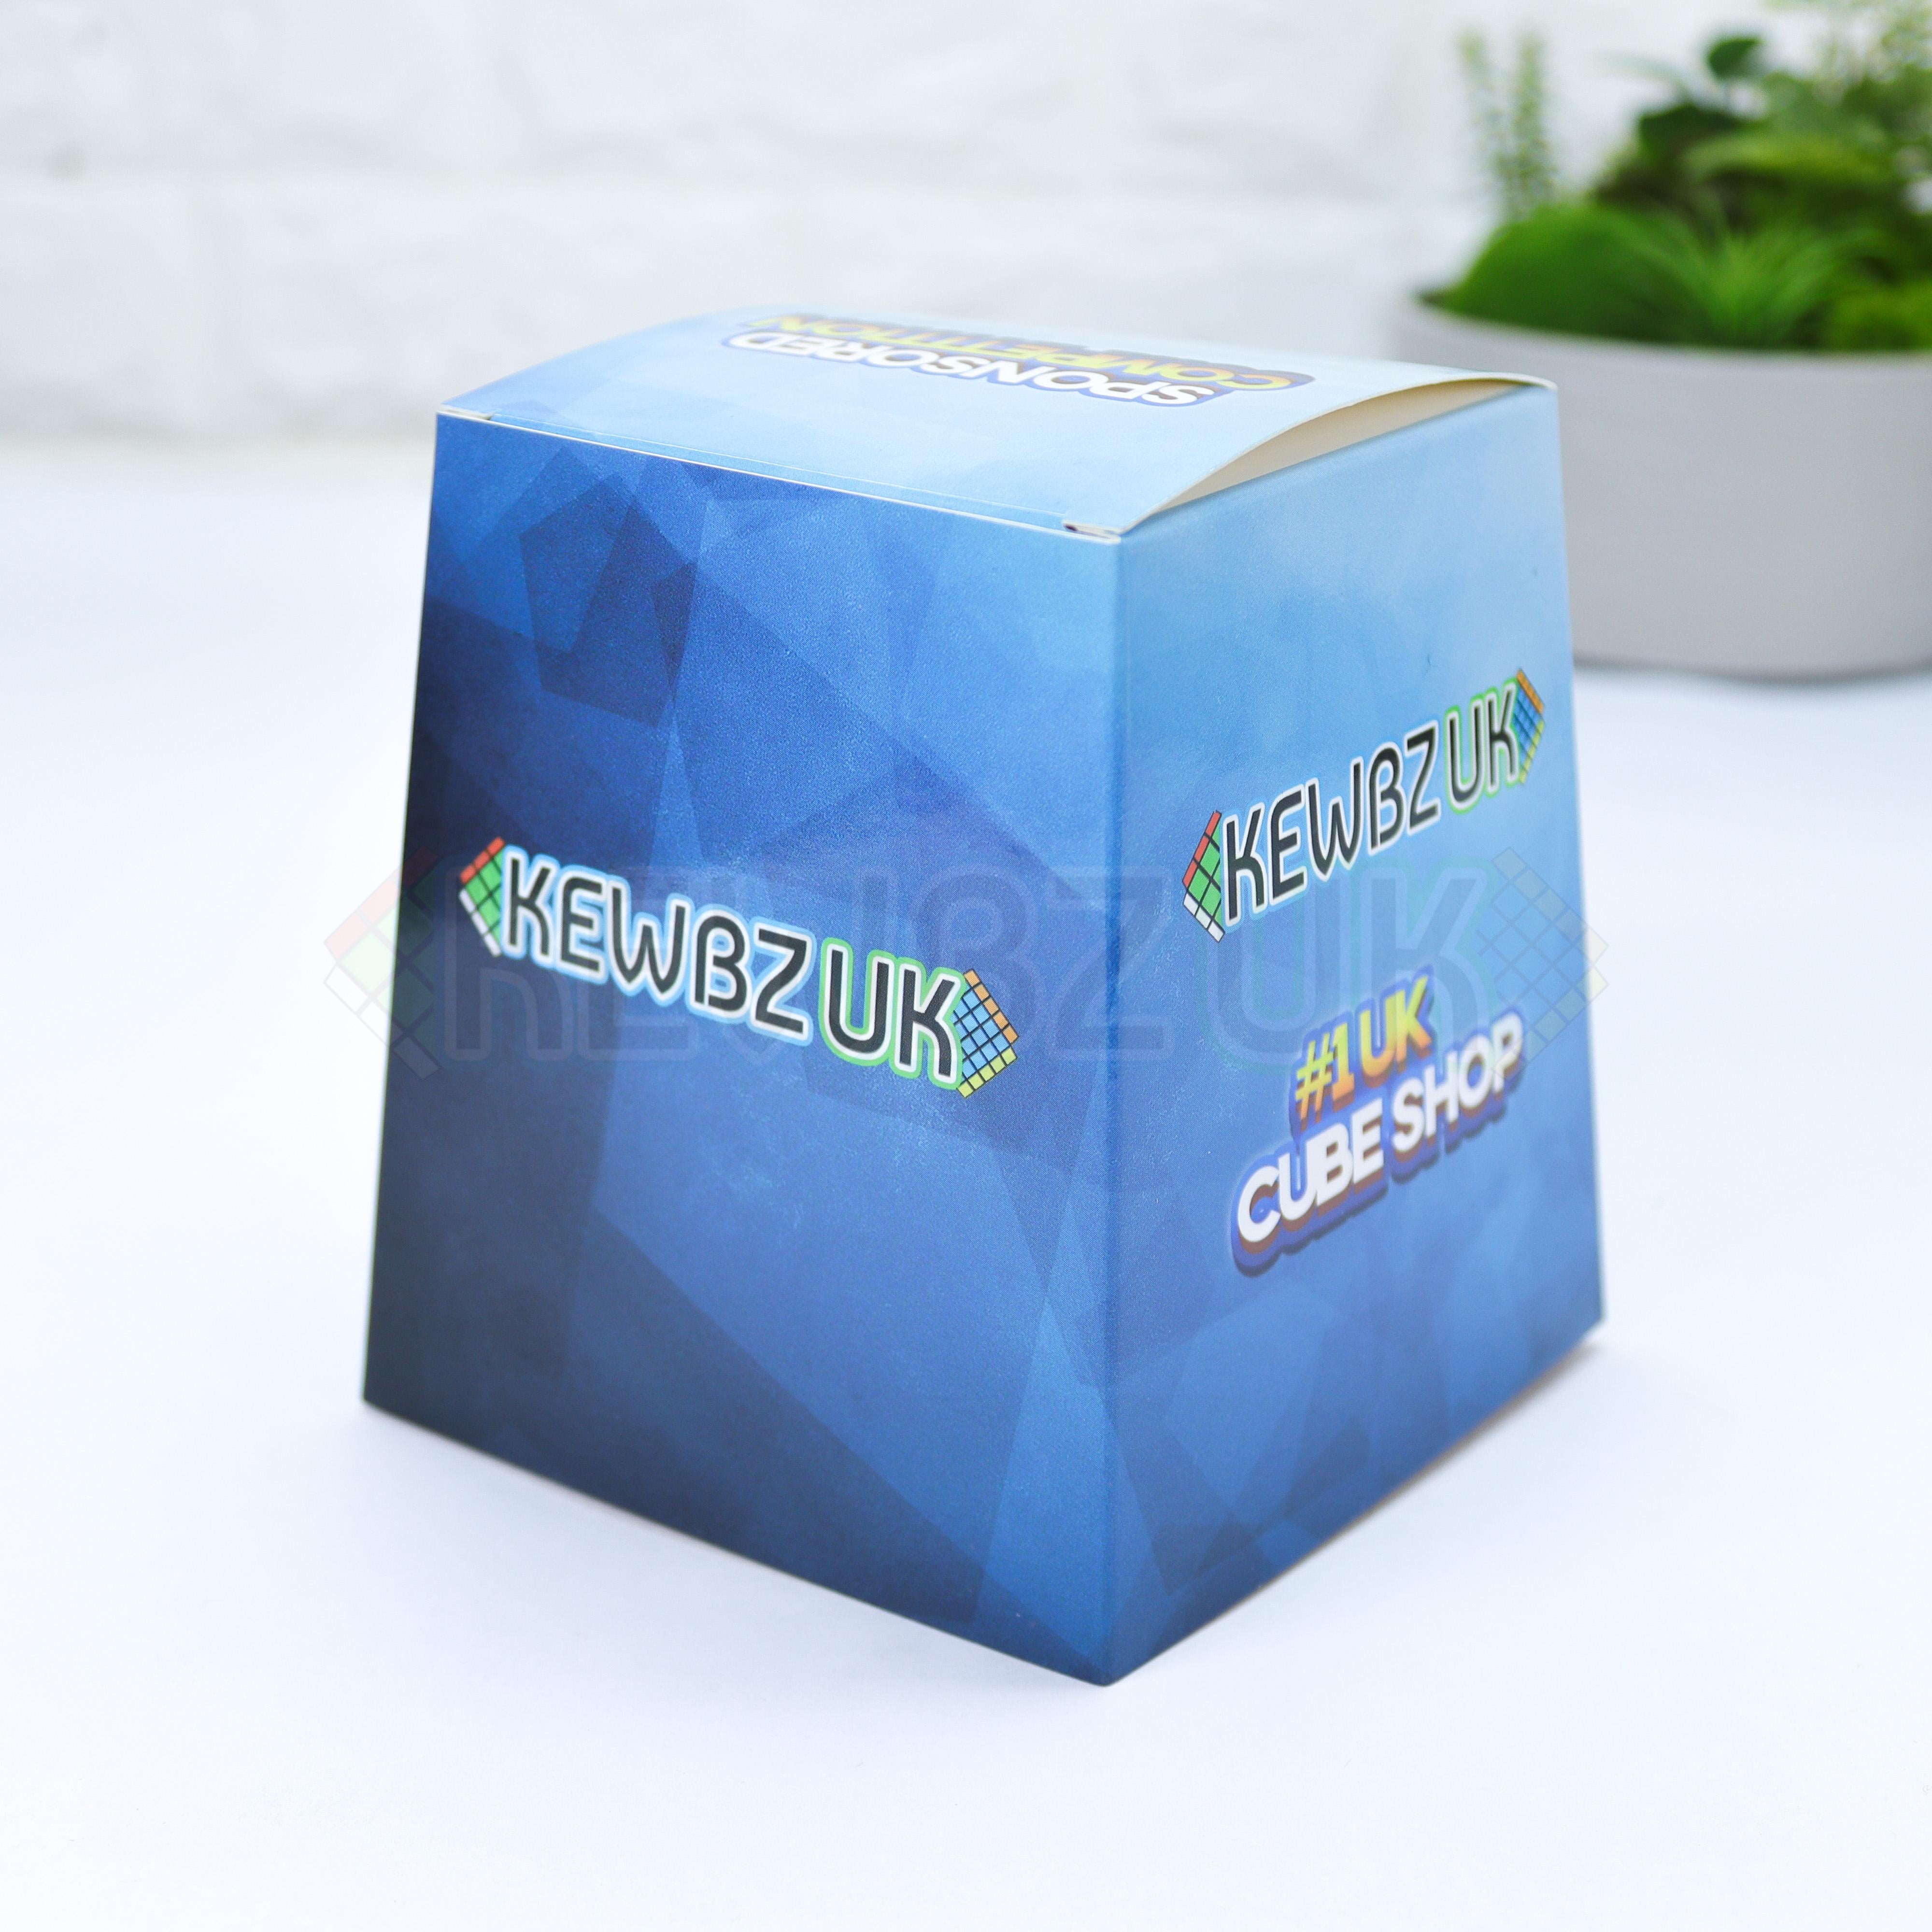 KewbzUK Cube Cover V3